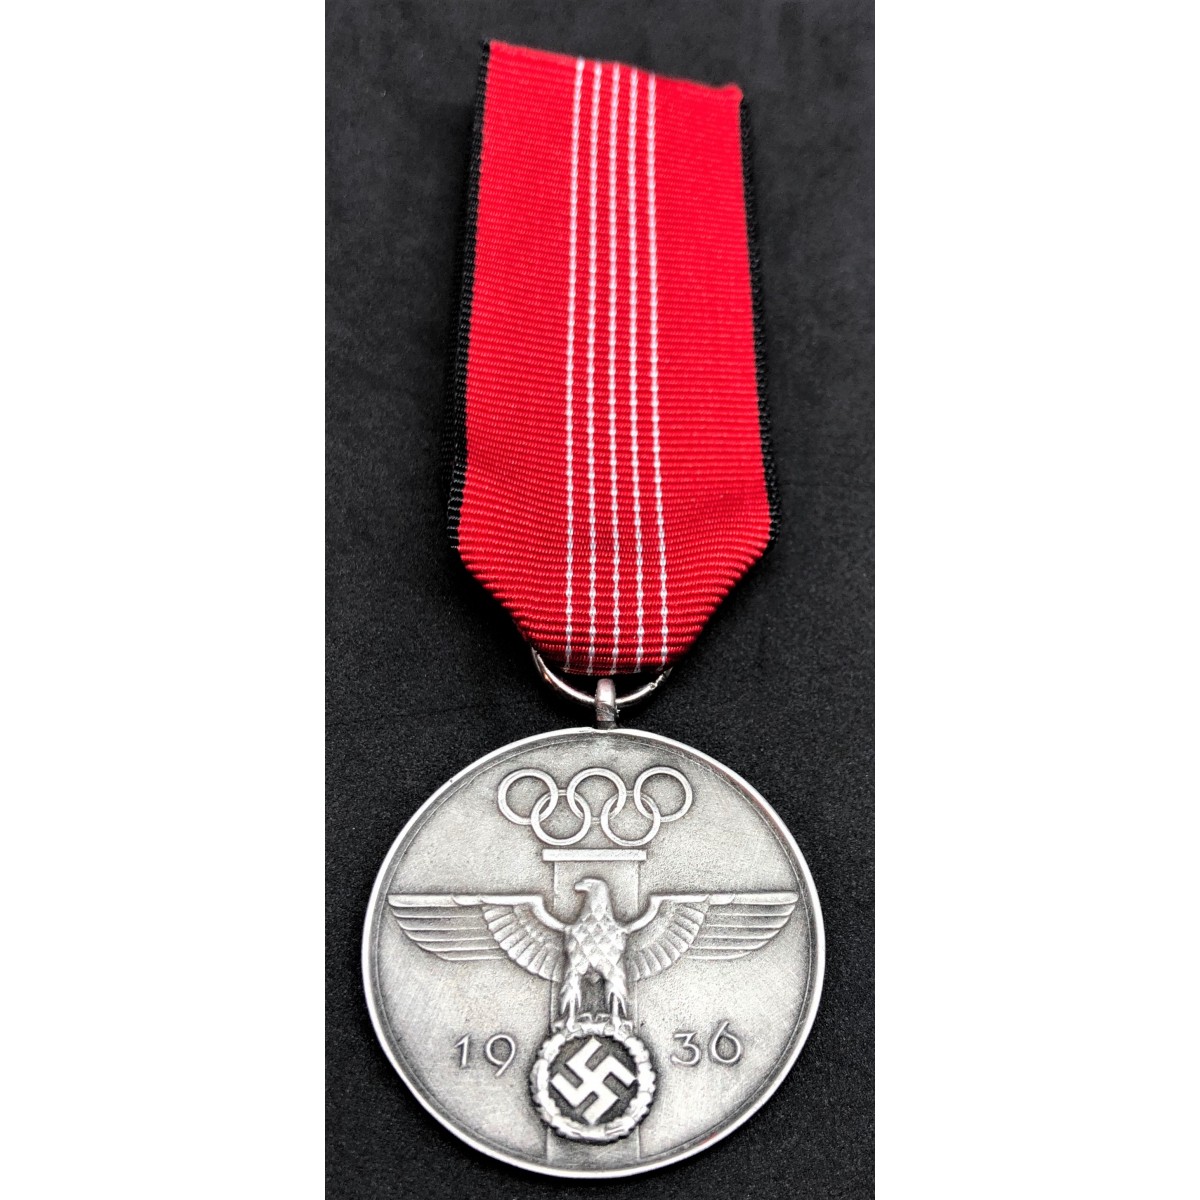 Olympia-Ehrenzeichen 2.Kl Erinnerungsmedaille Ordensband 0,30m Deutsches Reich